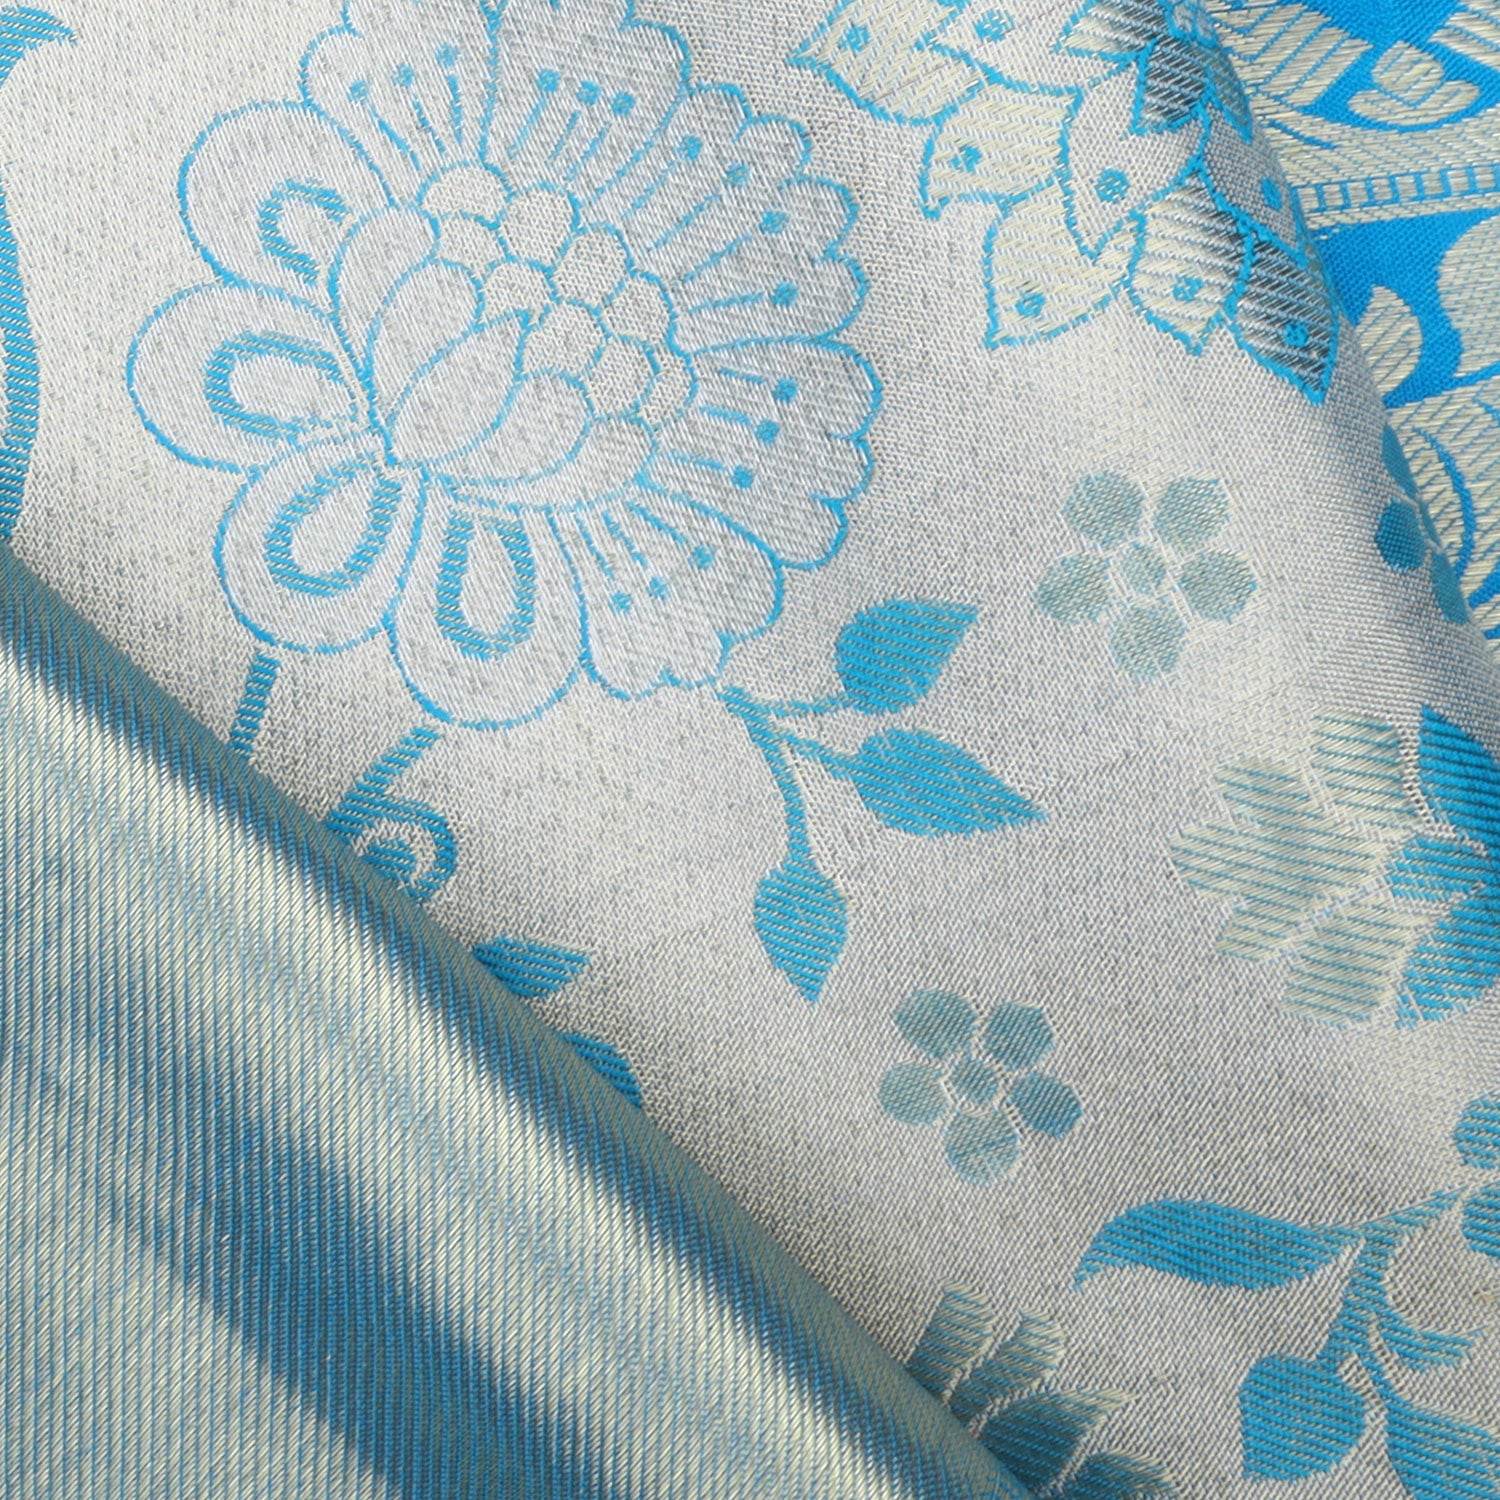 Silver Tissue Kanjivaram Silk Saree With Floral Pattern - Singhania's